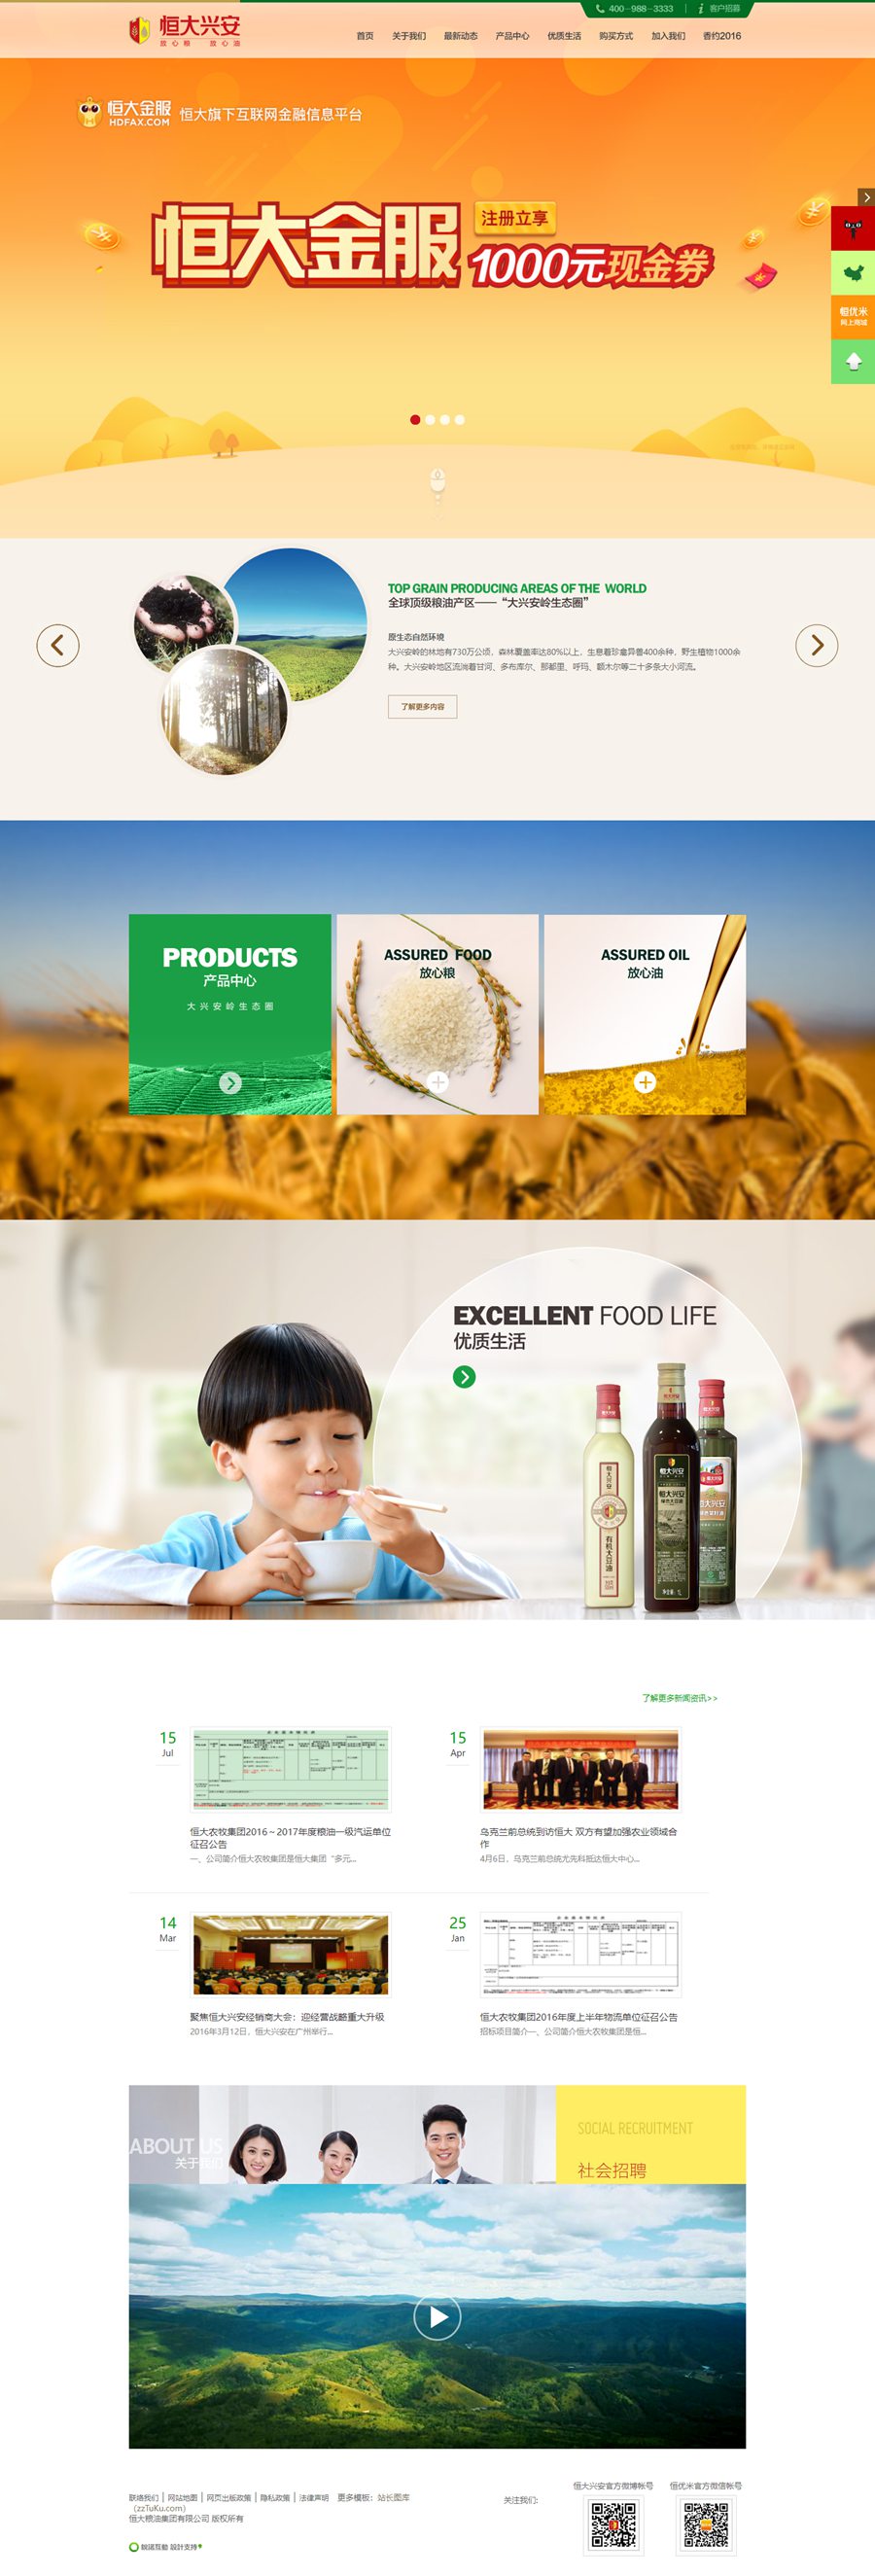 仿某大型粮油企业食品粮食整站静态页面HTML模板